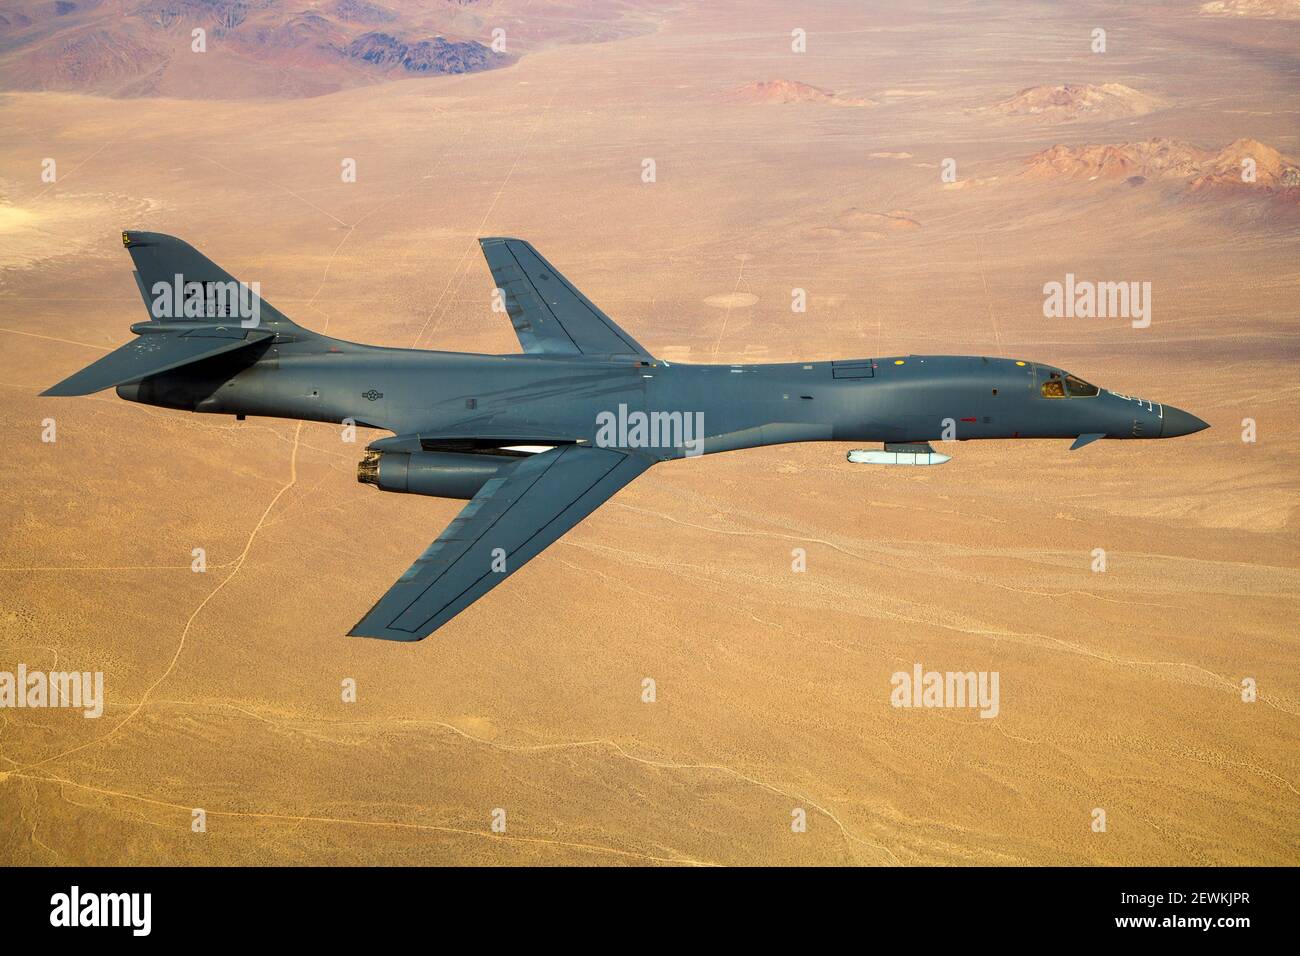 US AIR FORCE USAF B-1B AIRCRAFT DD 8X12 PHOTOGRAPH 